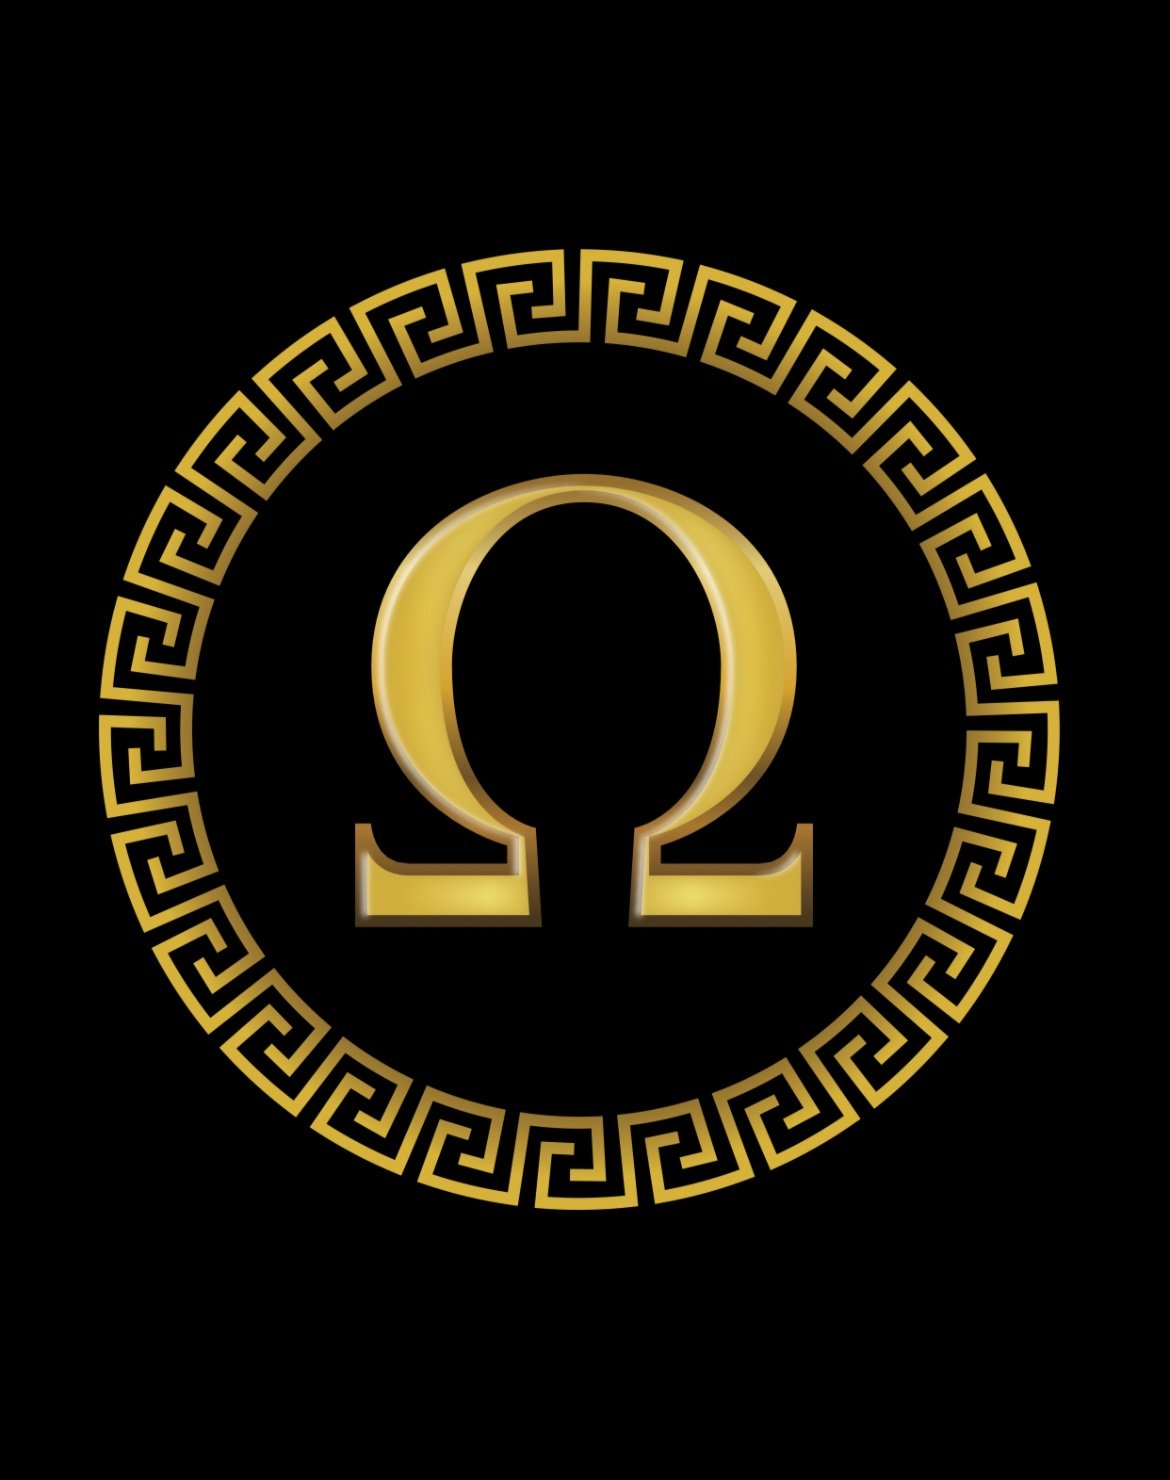 Omega Movers company logo